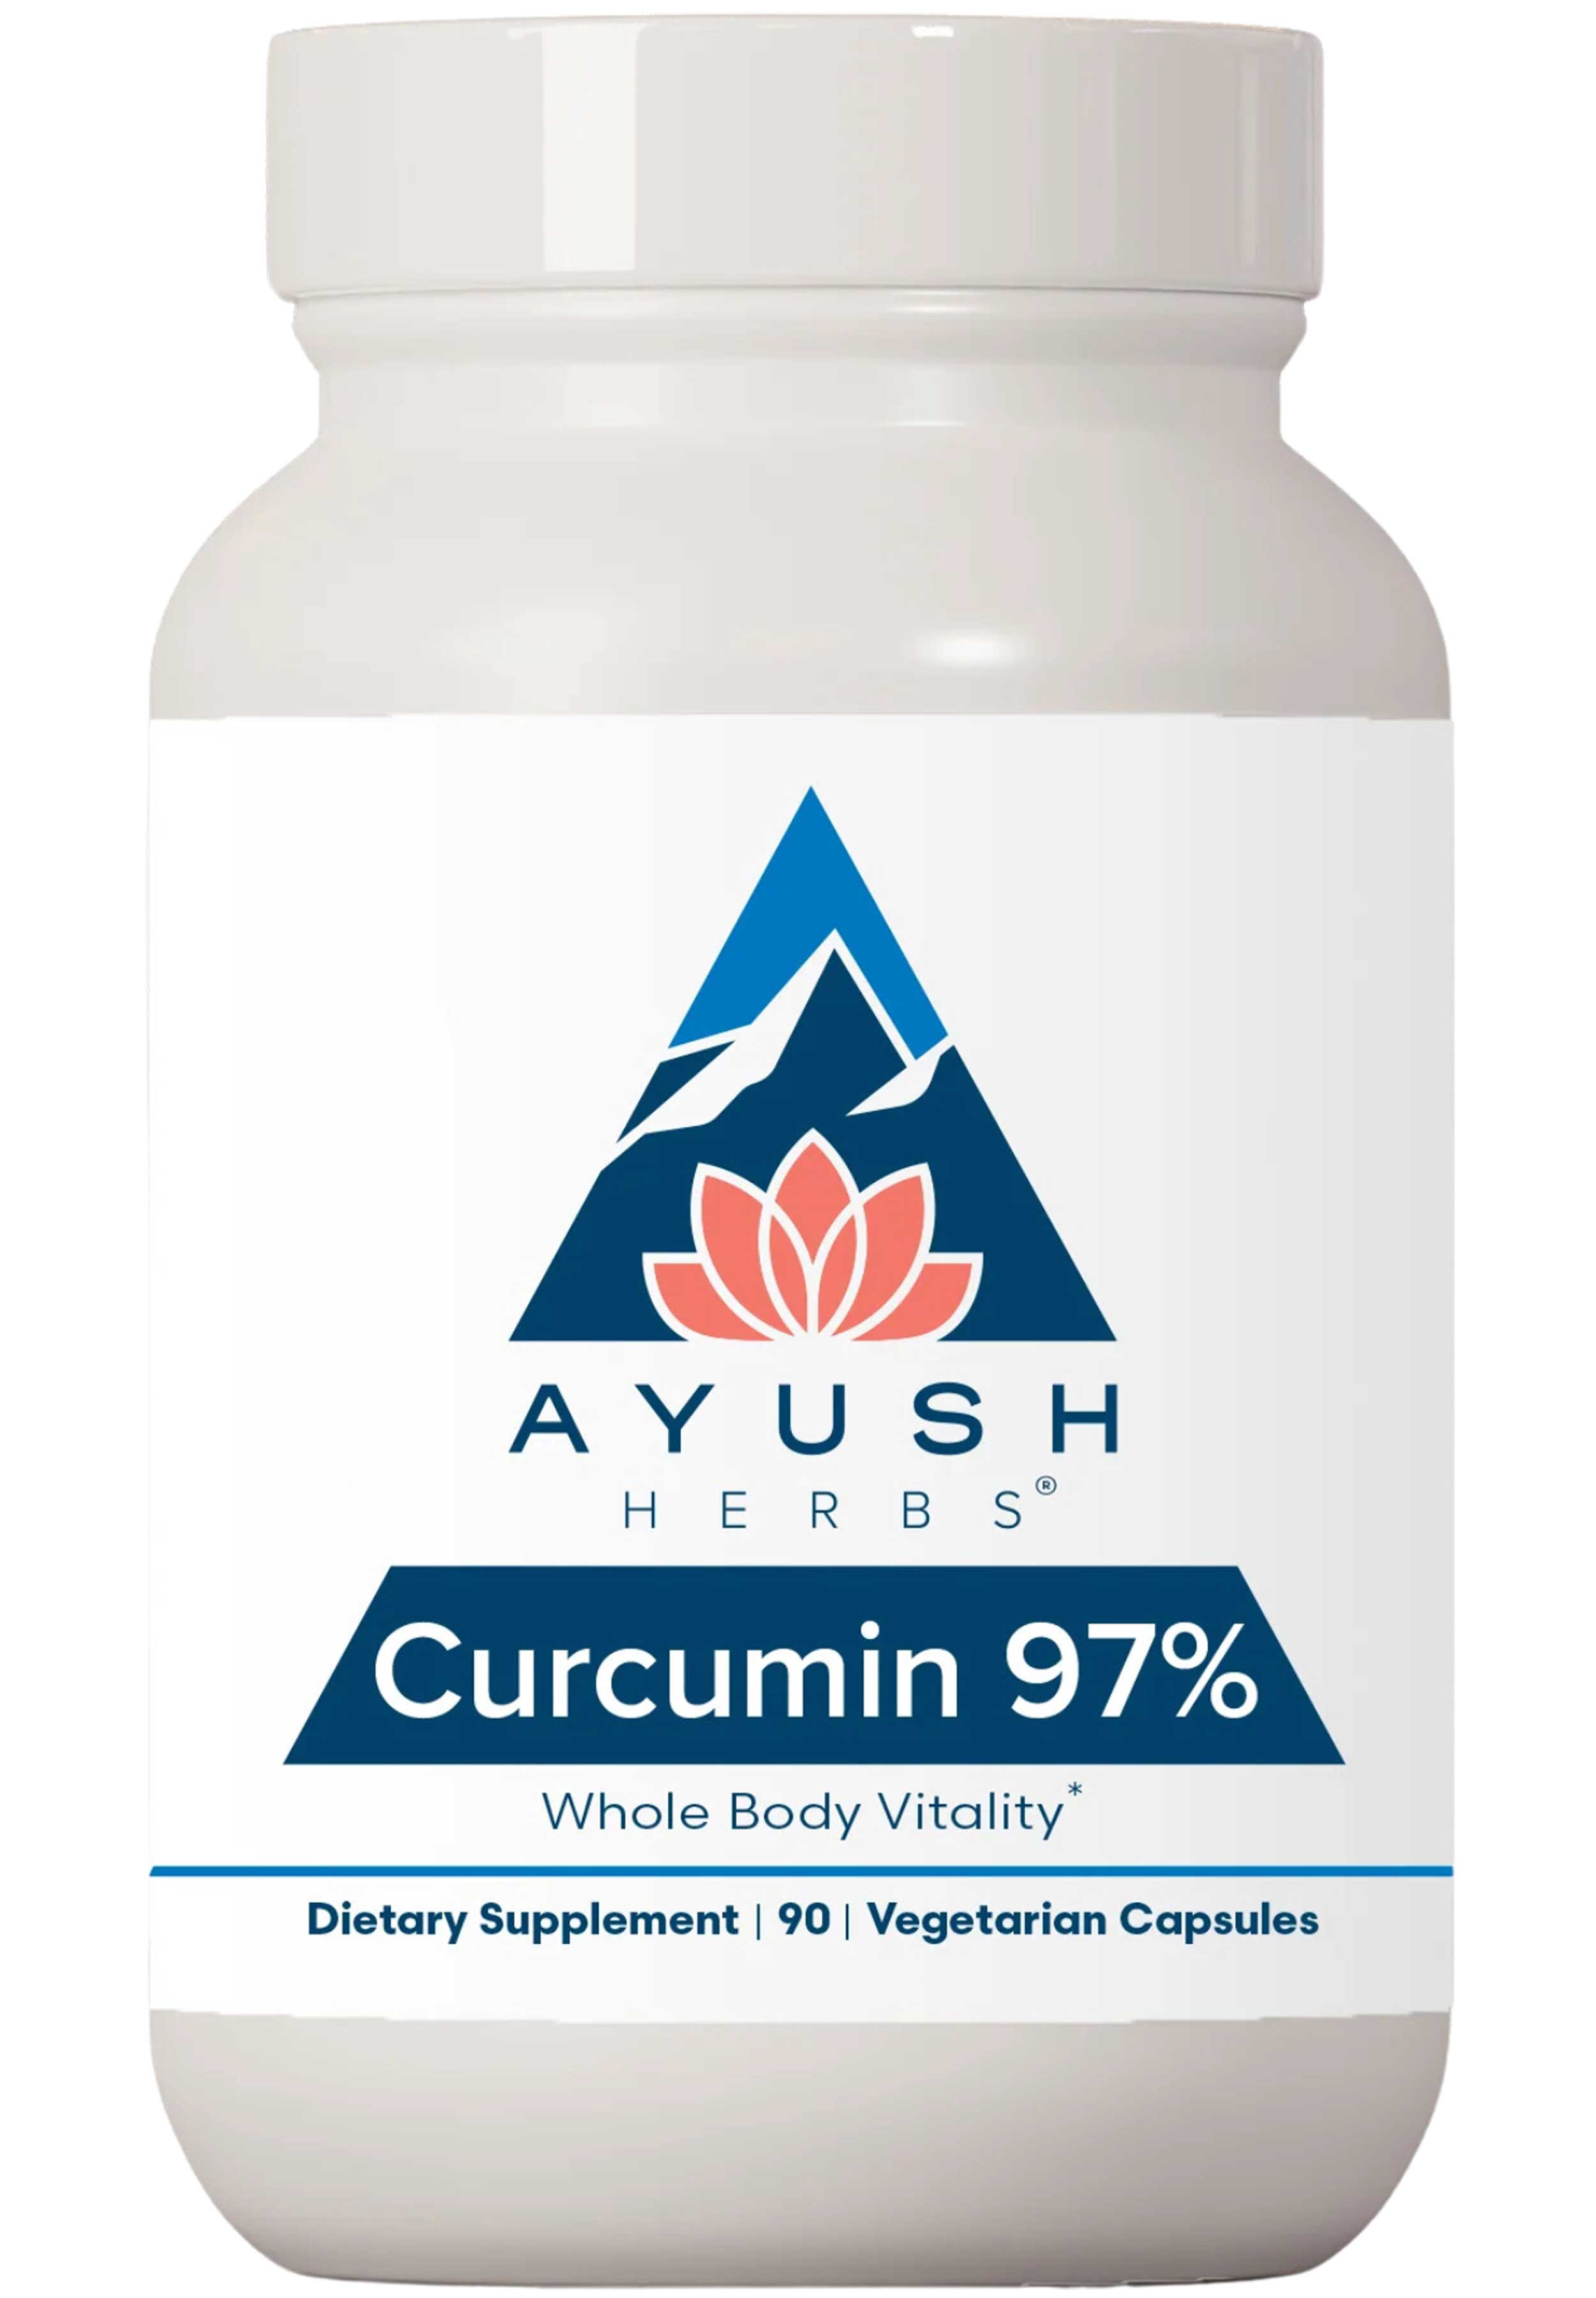 Ayush Herbs Curcumin 97%